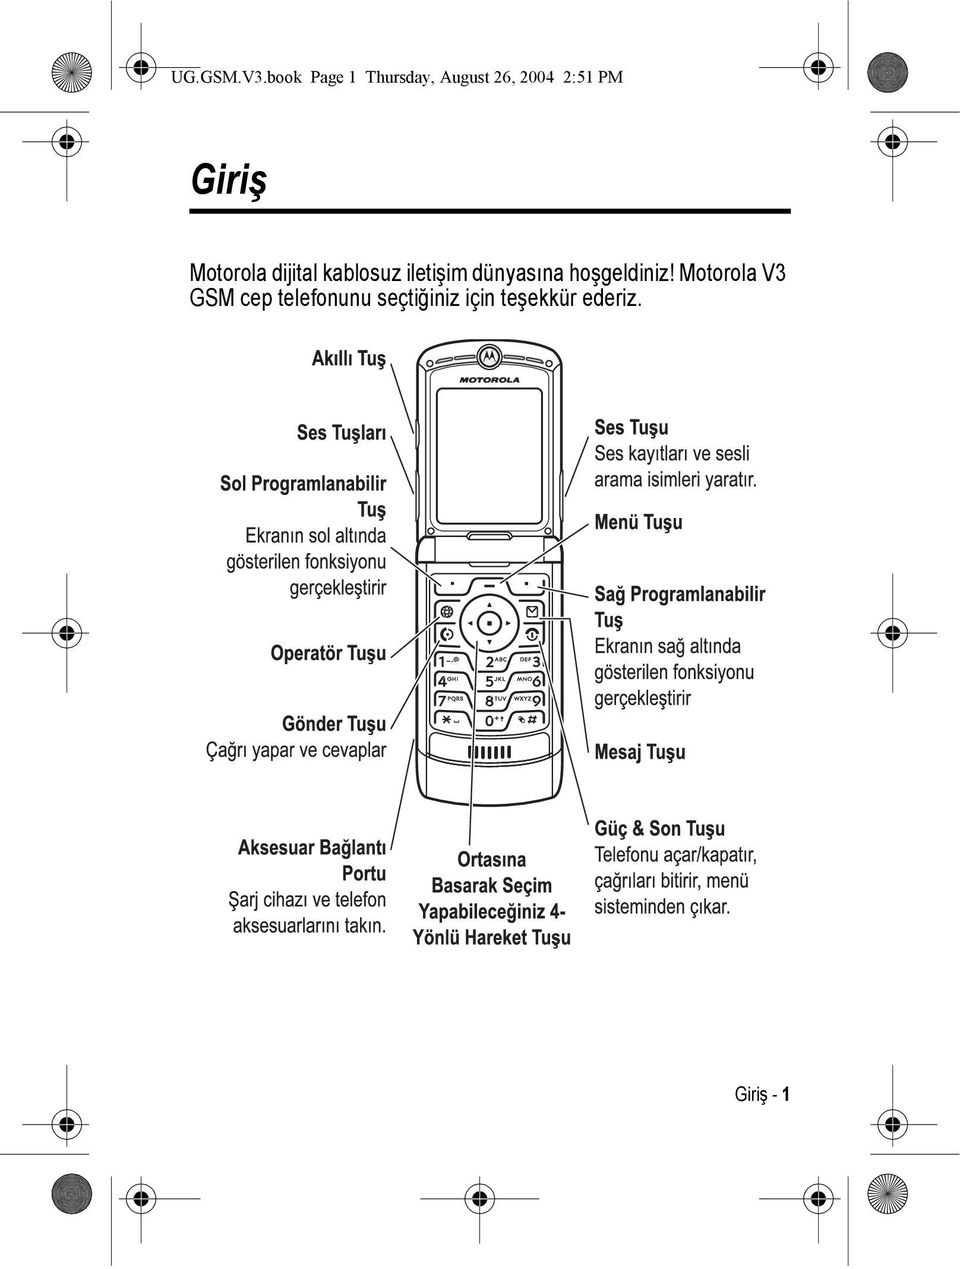 Giriş Motorola dijital kablosuz iletişim